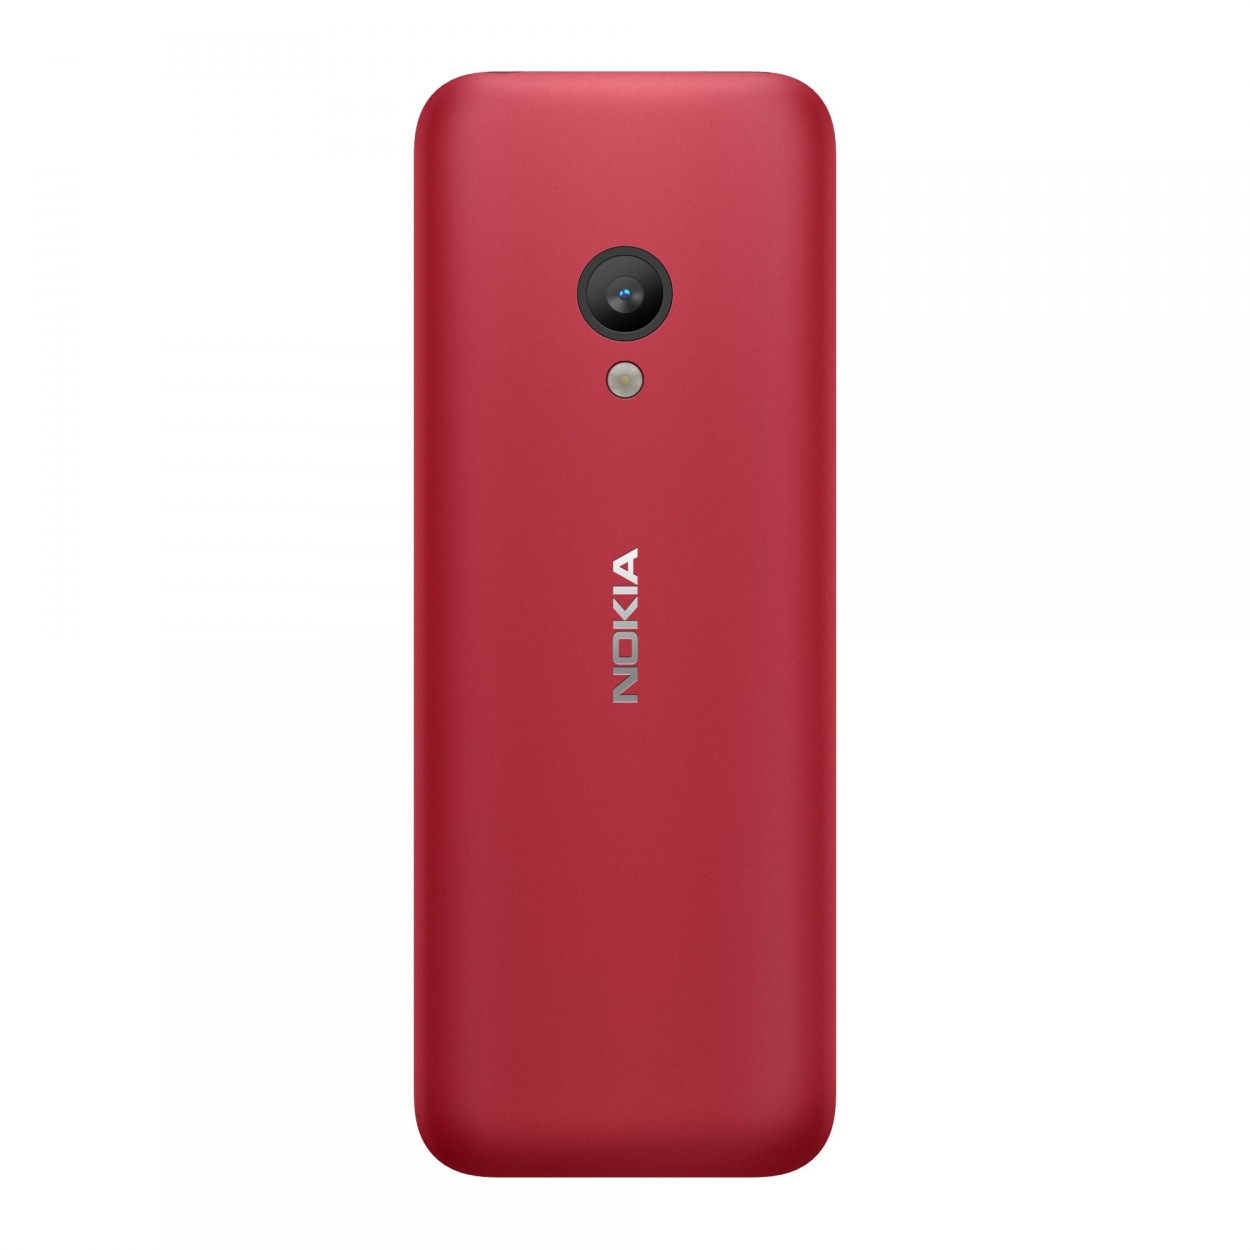 Ra mắt Nokia 150